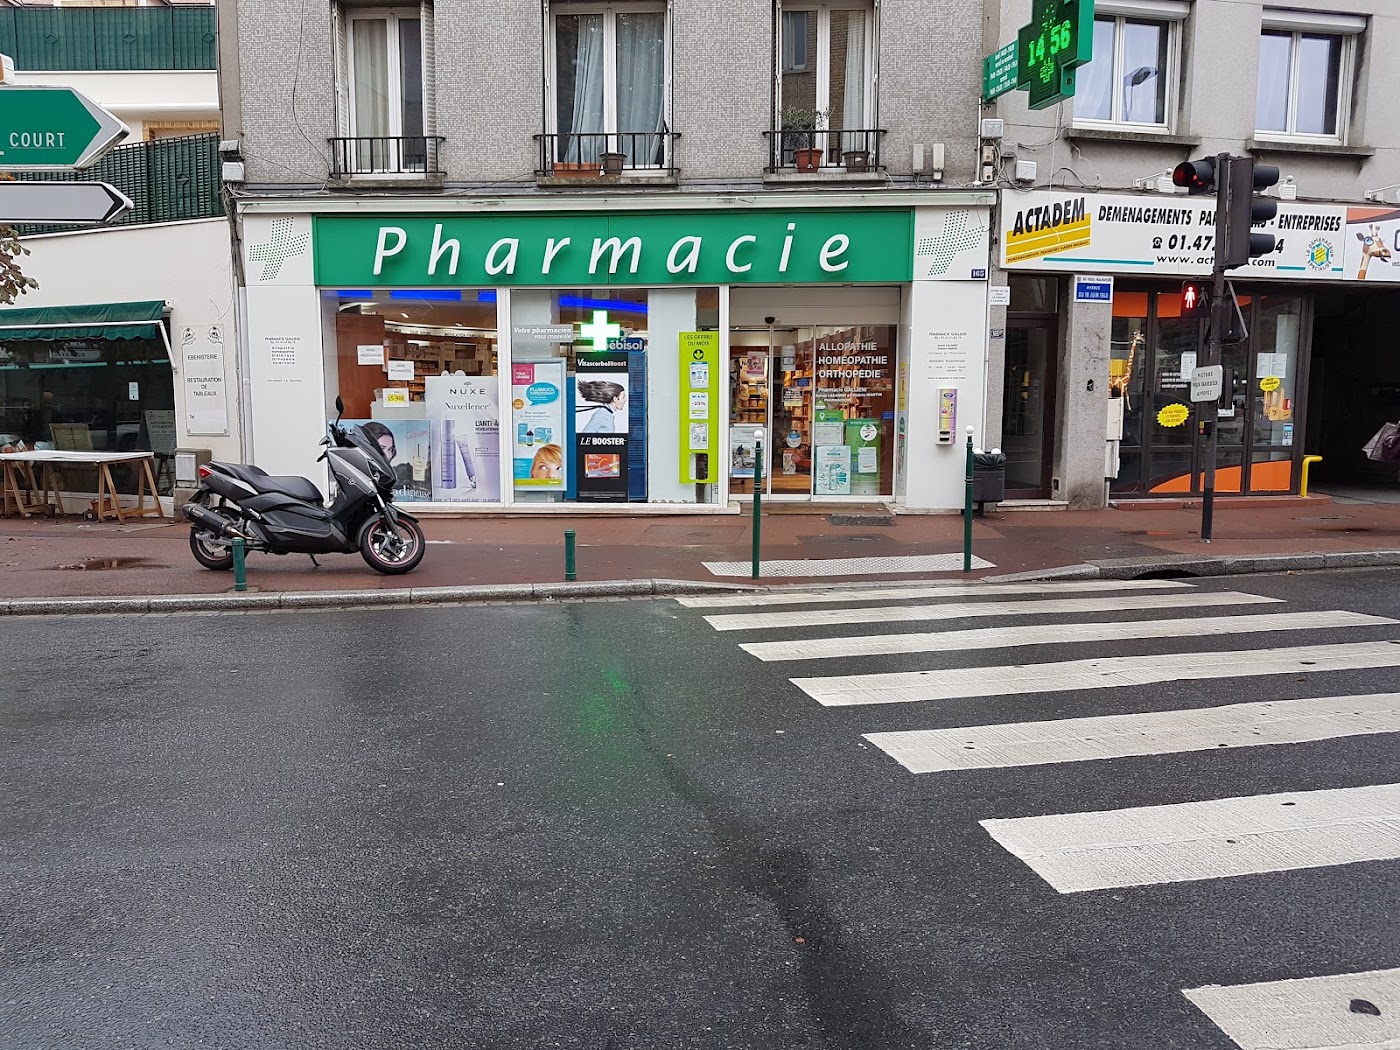 Pharmacie Galliéni